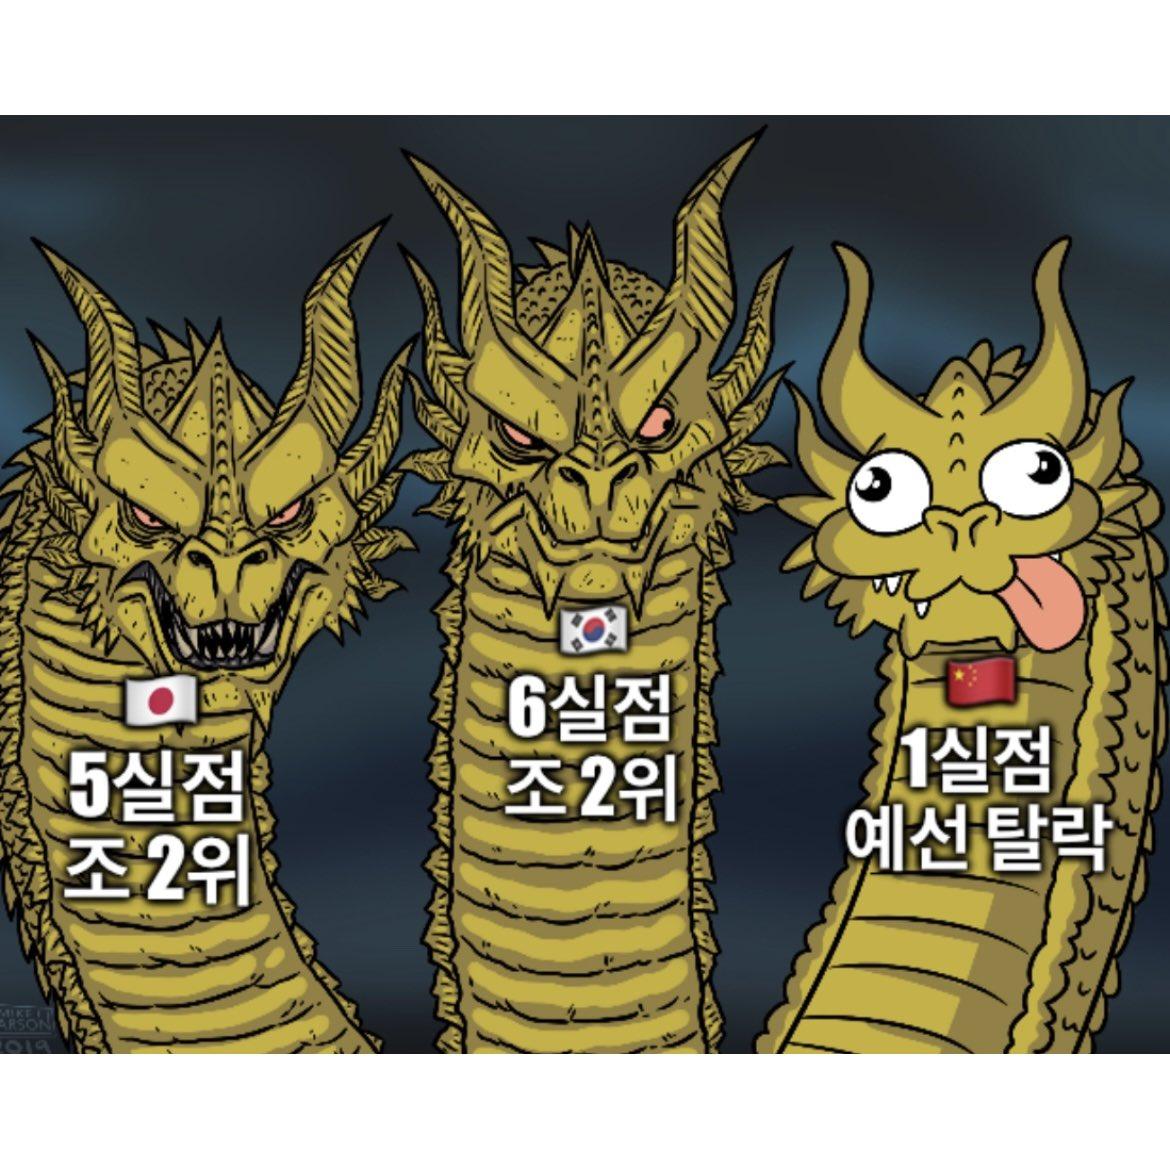 아시안컵 동아시아 조별예선 요약